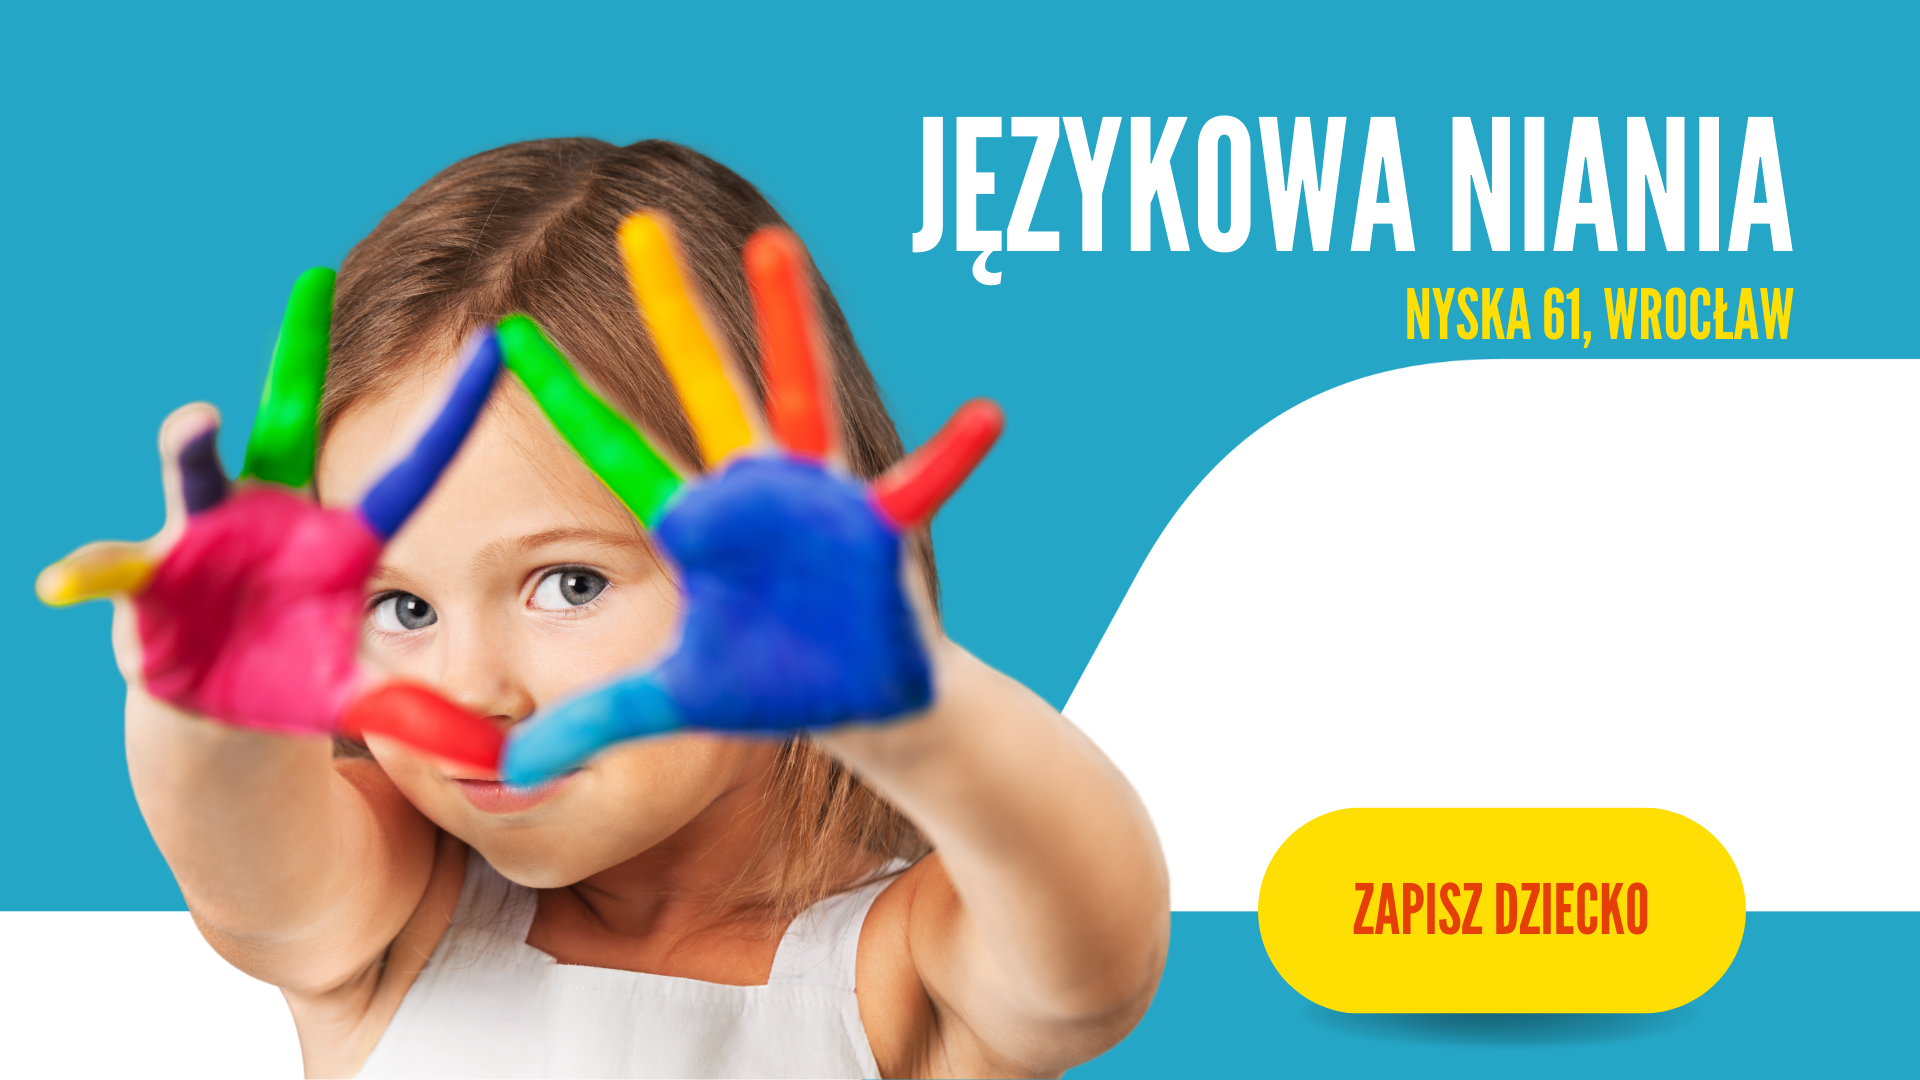 Językowa Niania 15102022r Gerelis Szkoła Językowa Wrocław 5055